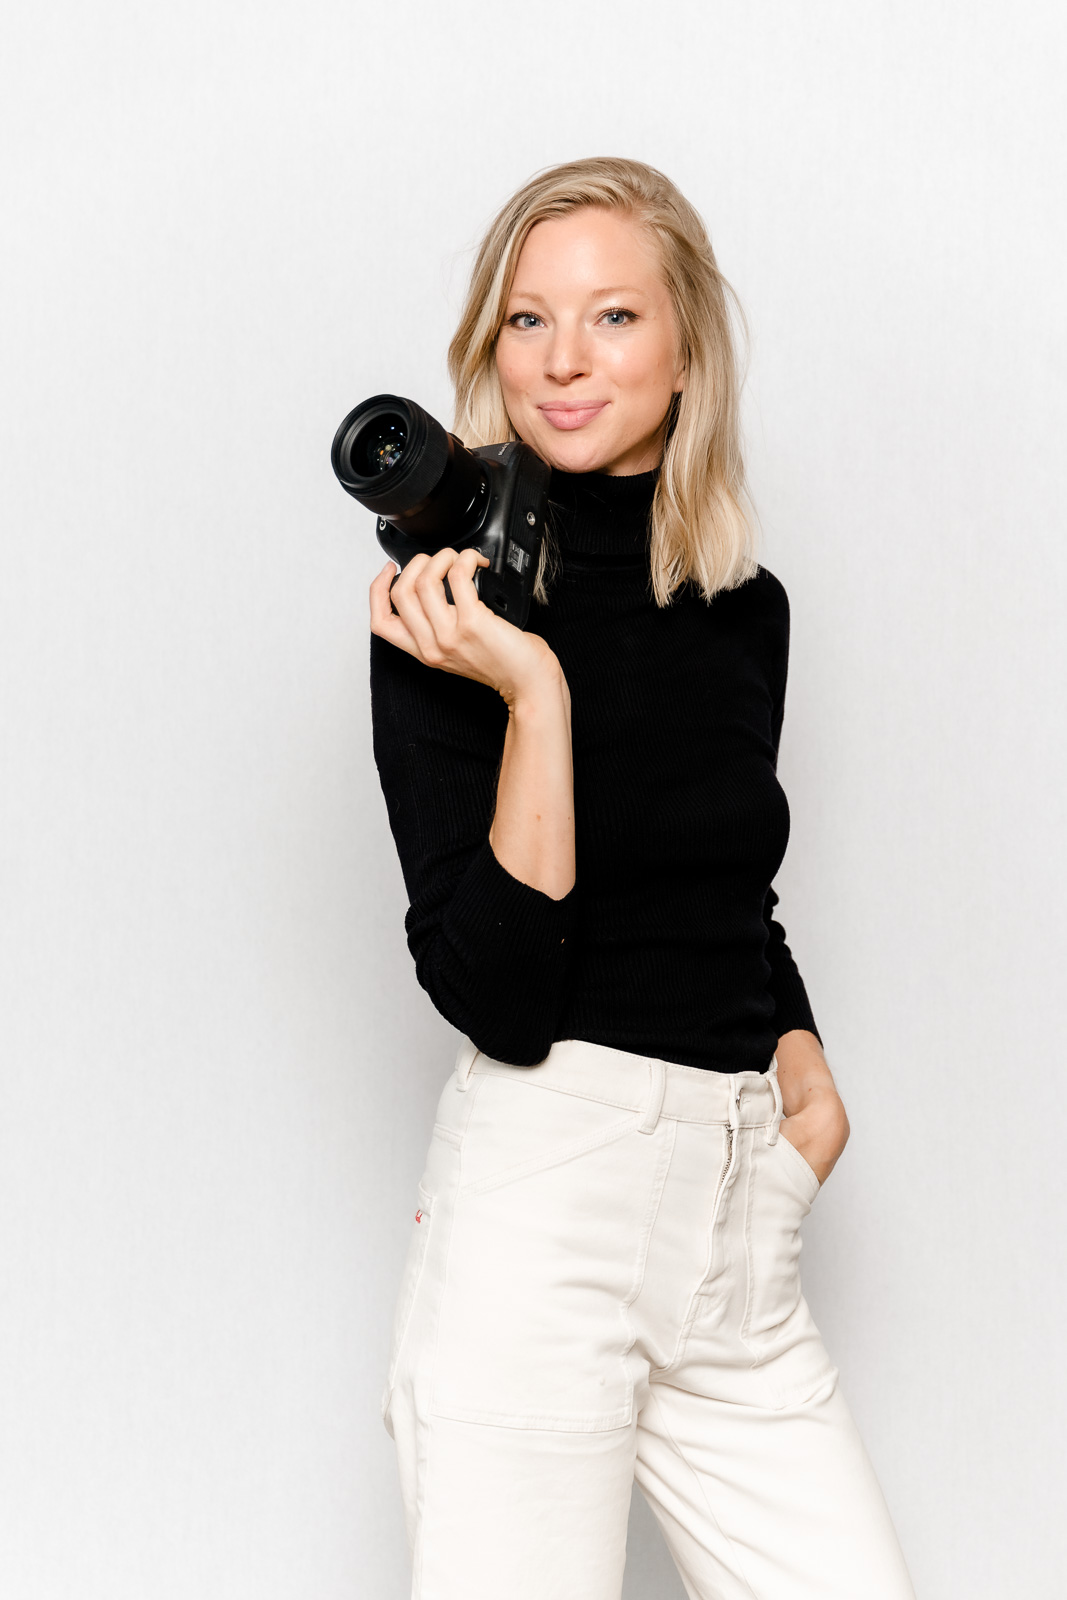 Portrait von Personal Branding Fotografin Nina Wellstein